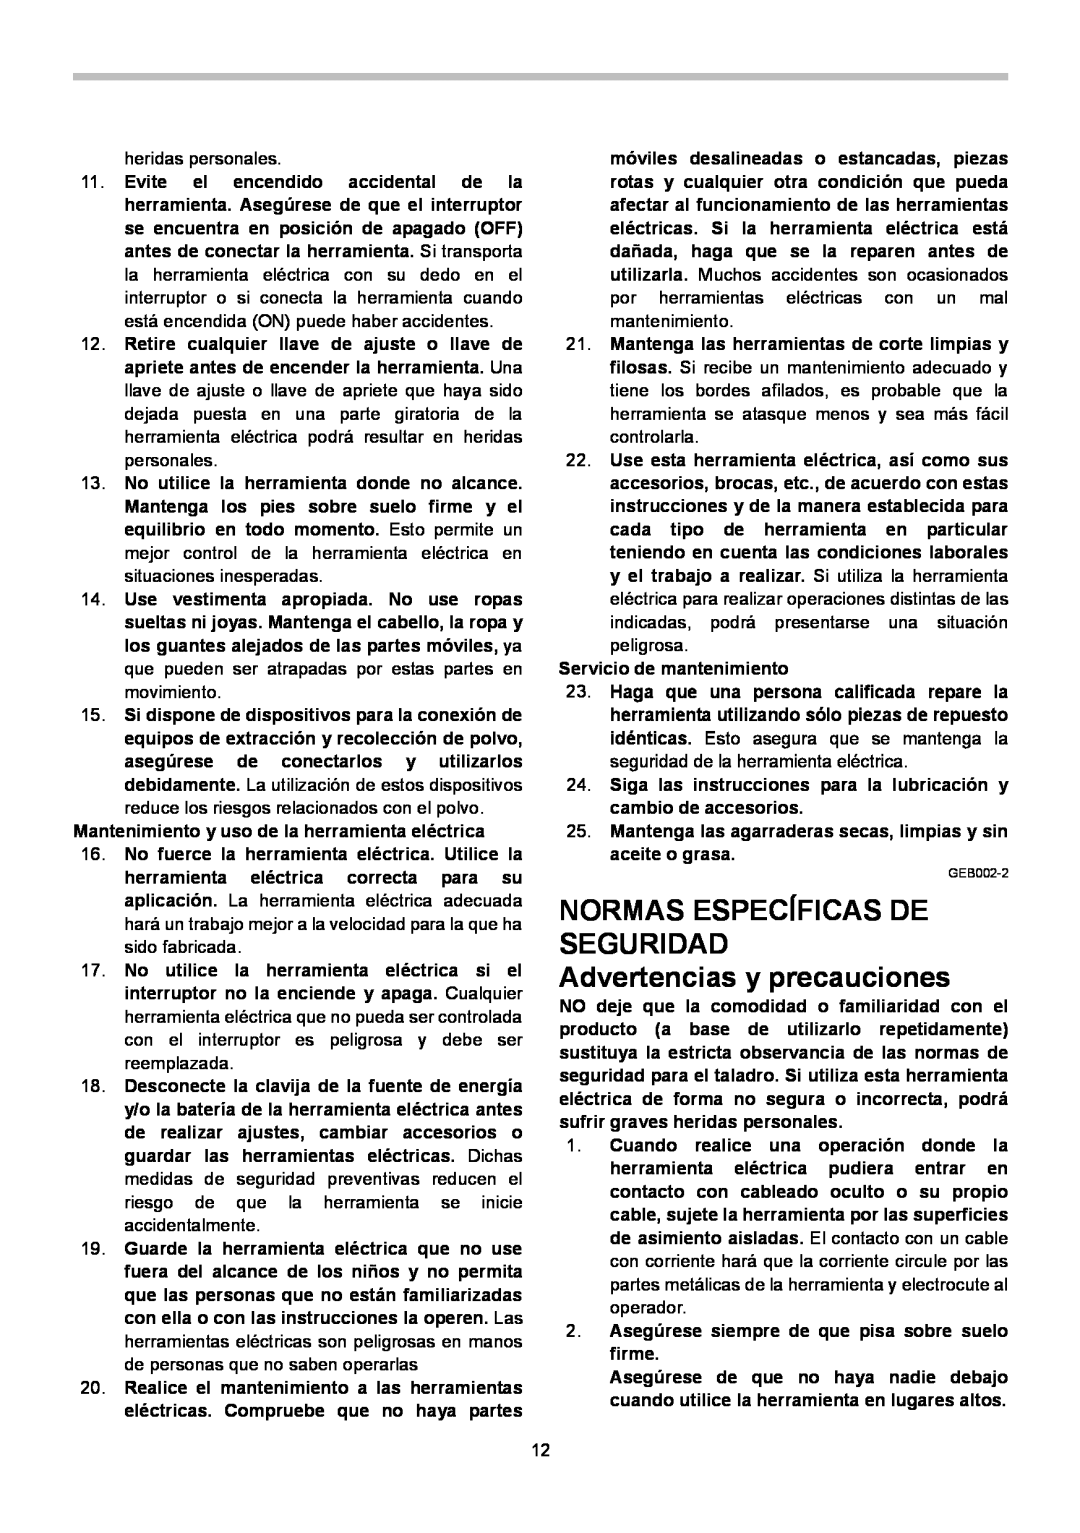 Makita 6510LVR instruction manual NORMAS ESPECÍFICAS DE SEGURIDAD Advertencias y precauciones 